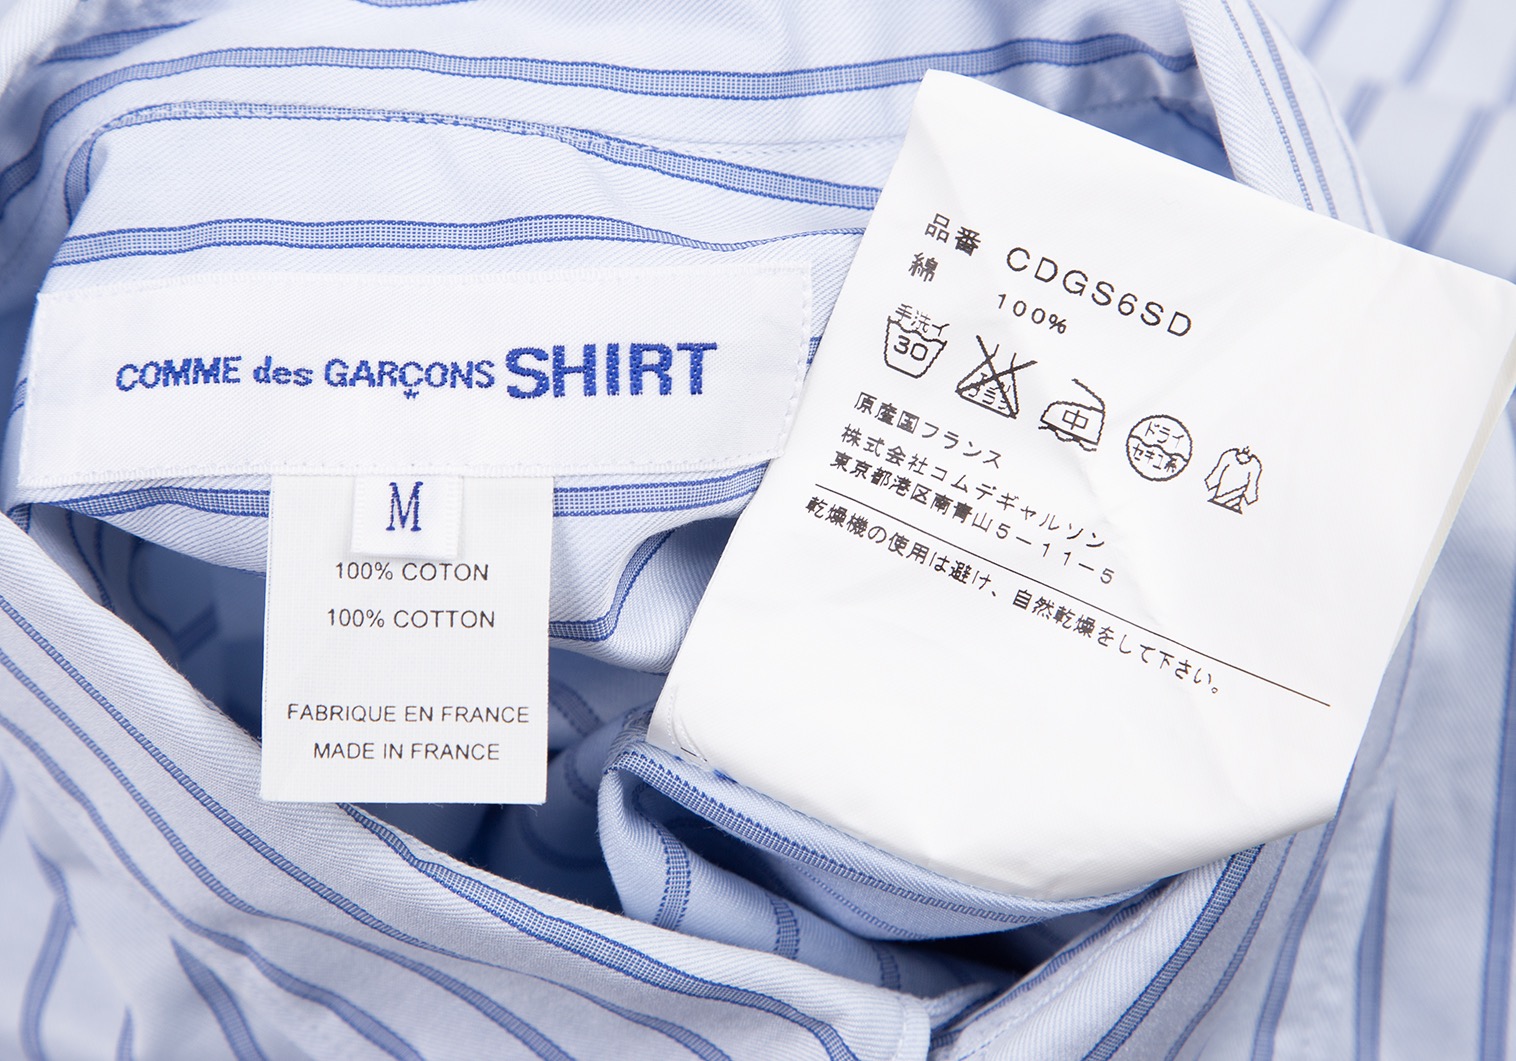 コムデギャルソン シャツCOMME des GARCONS SHIRT ダブルボタンストライプボタンダウンシャツ 水色M